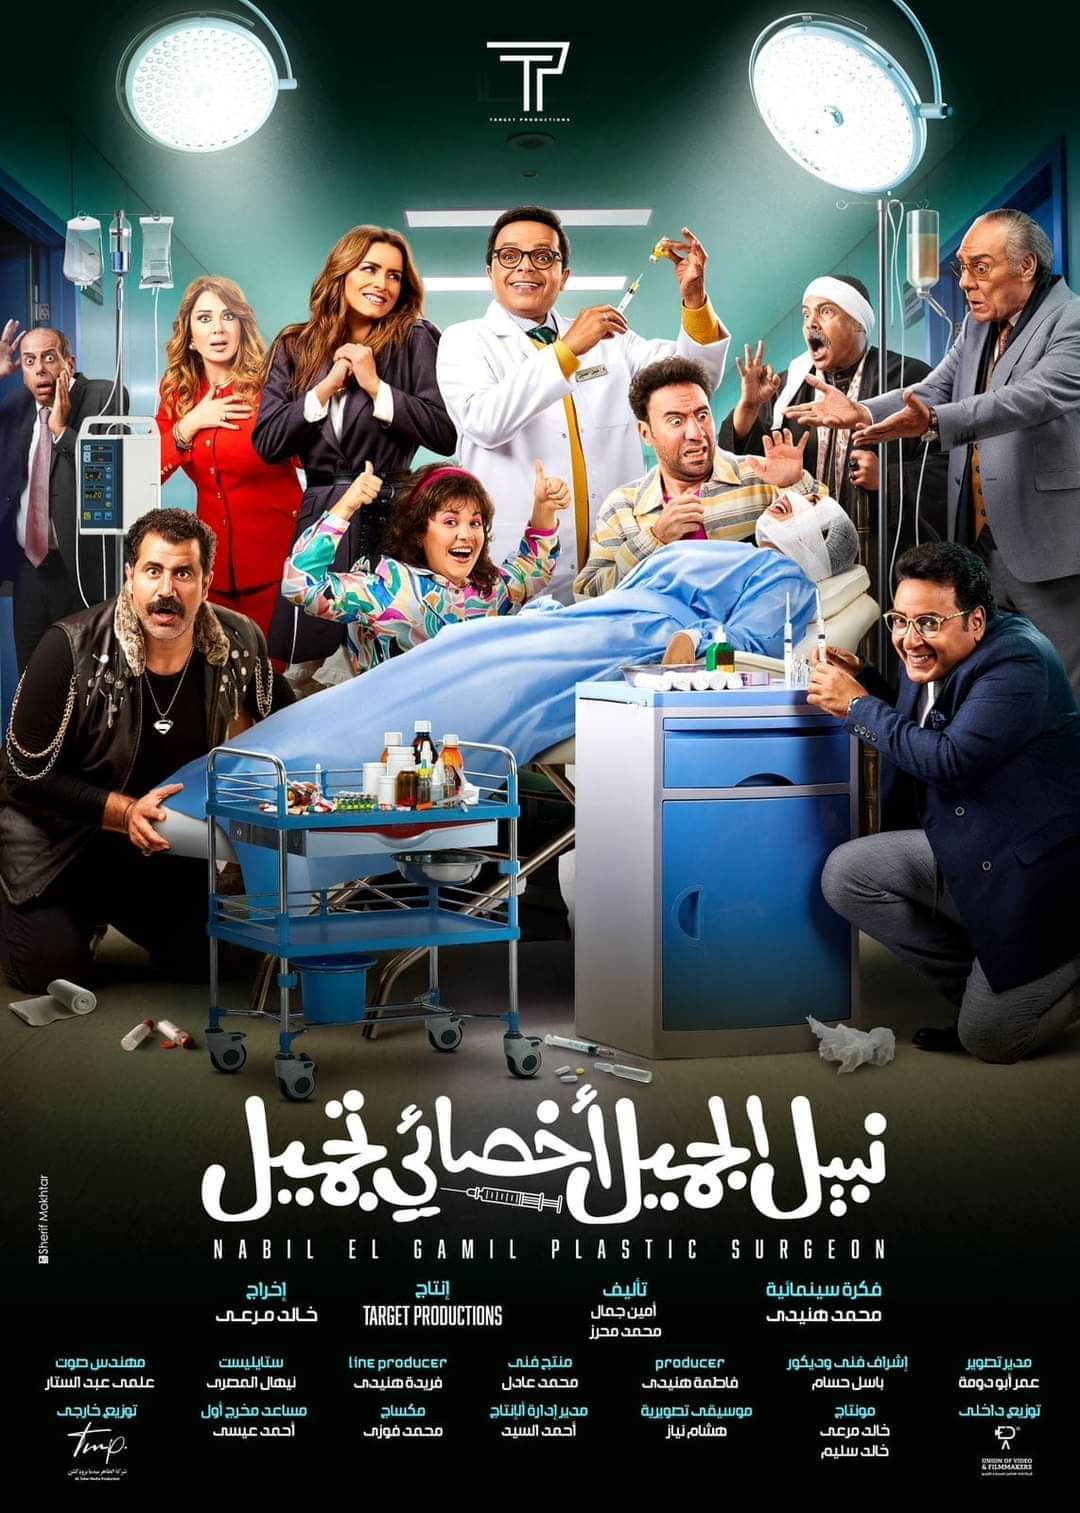 طرح البوستر الرسمي لفيلم نبيل الجميل بطولة محمد هنيدي